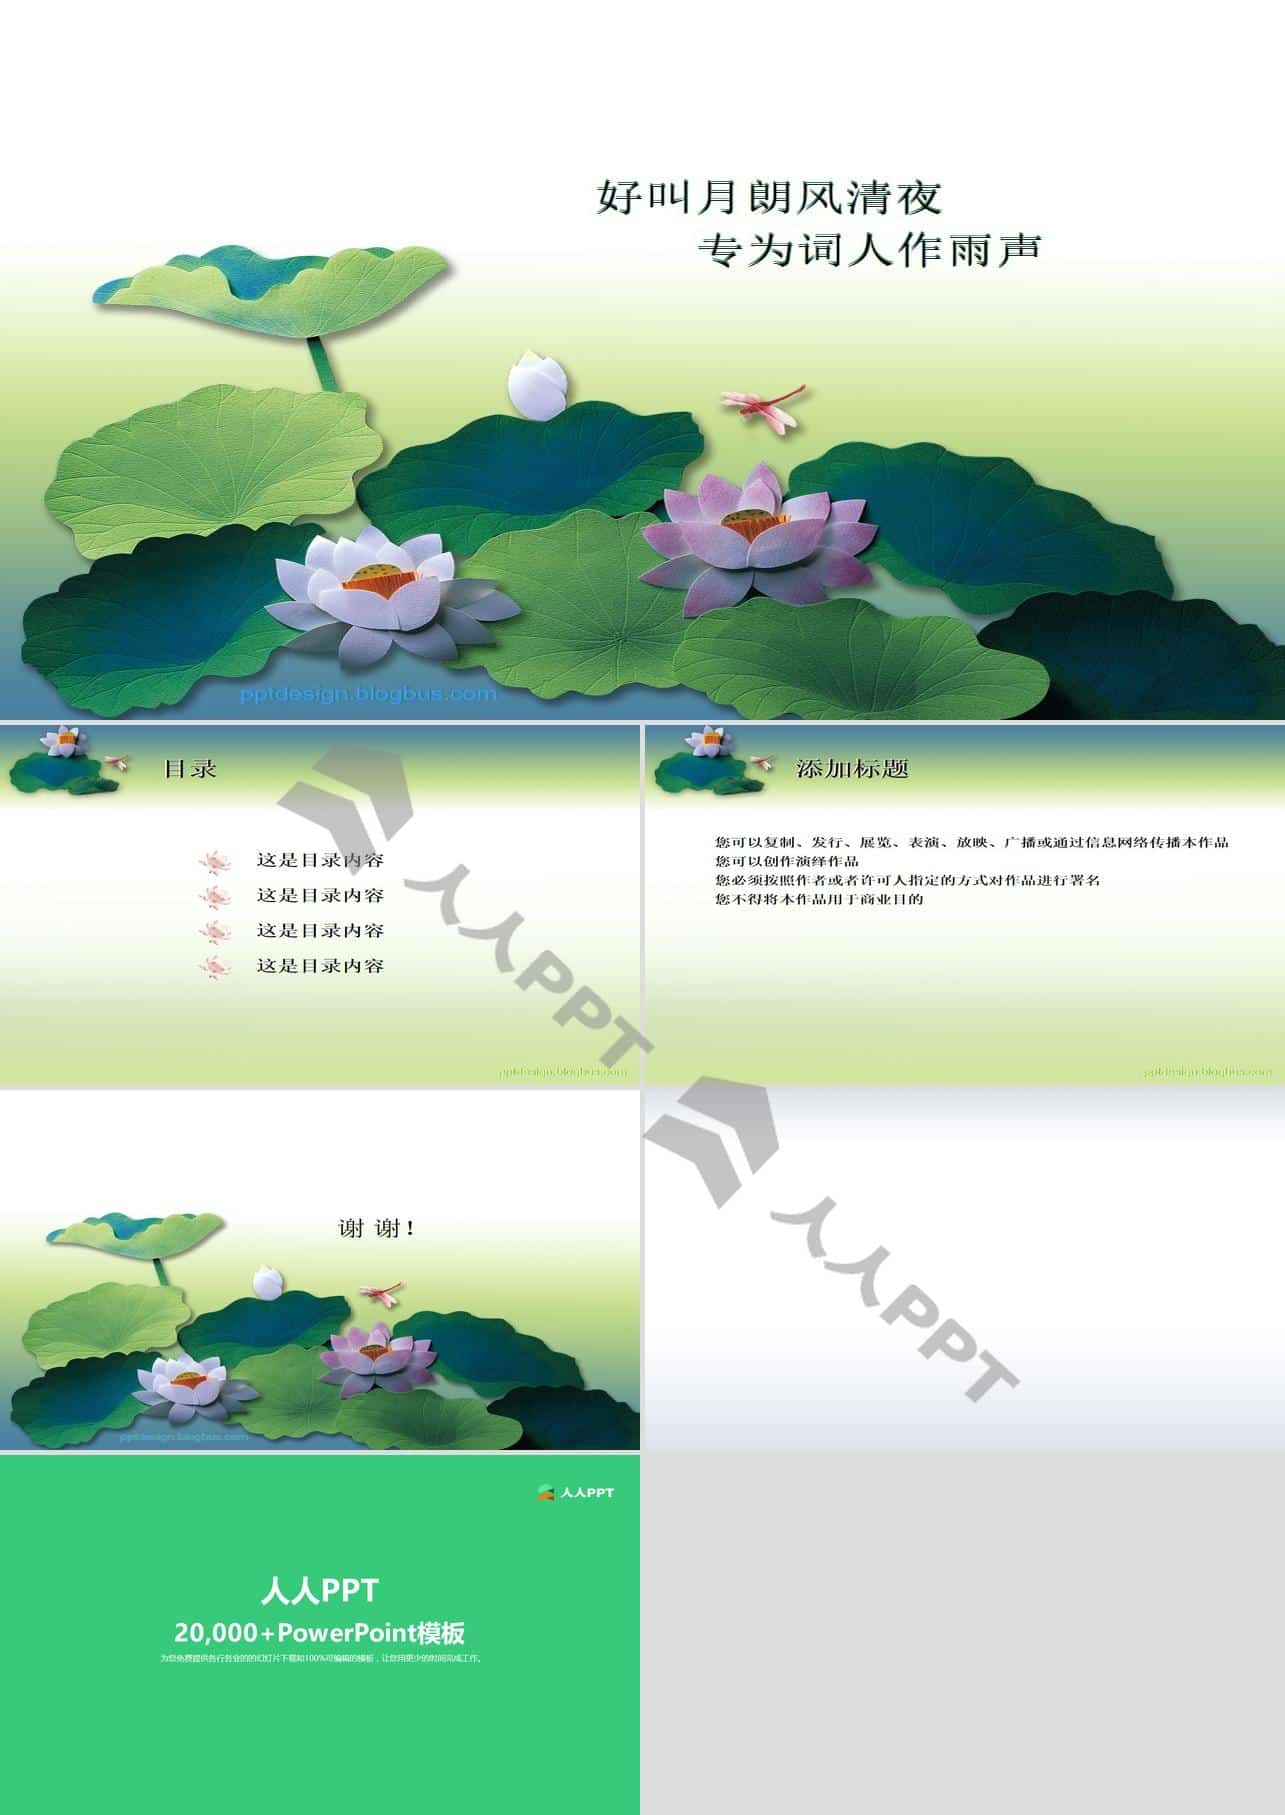 荷塘蜻蜓――中国风PPT模板长图